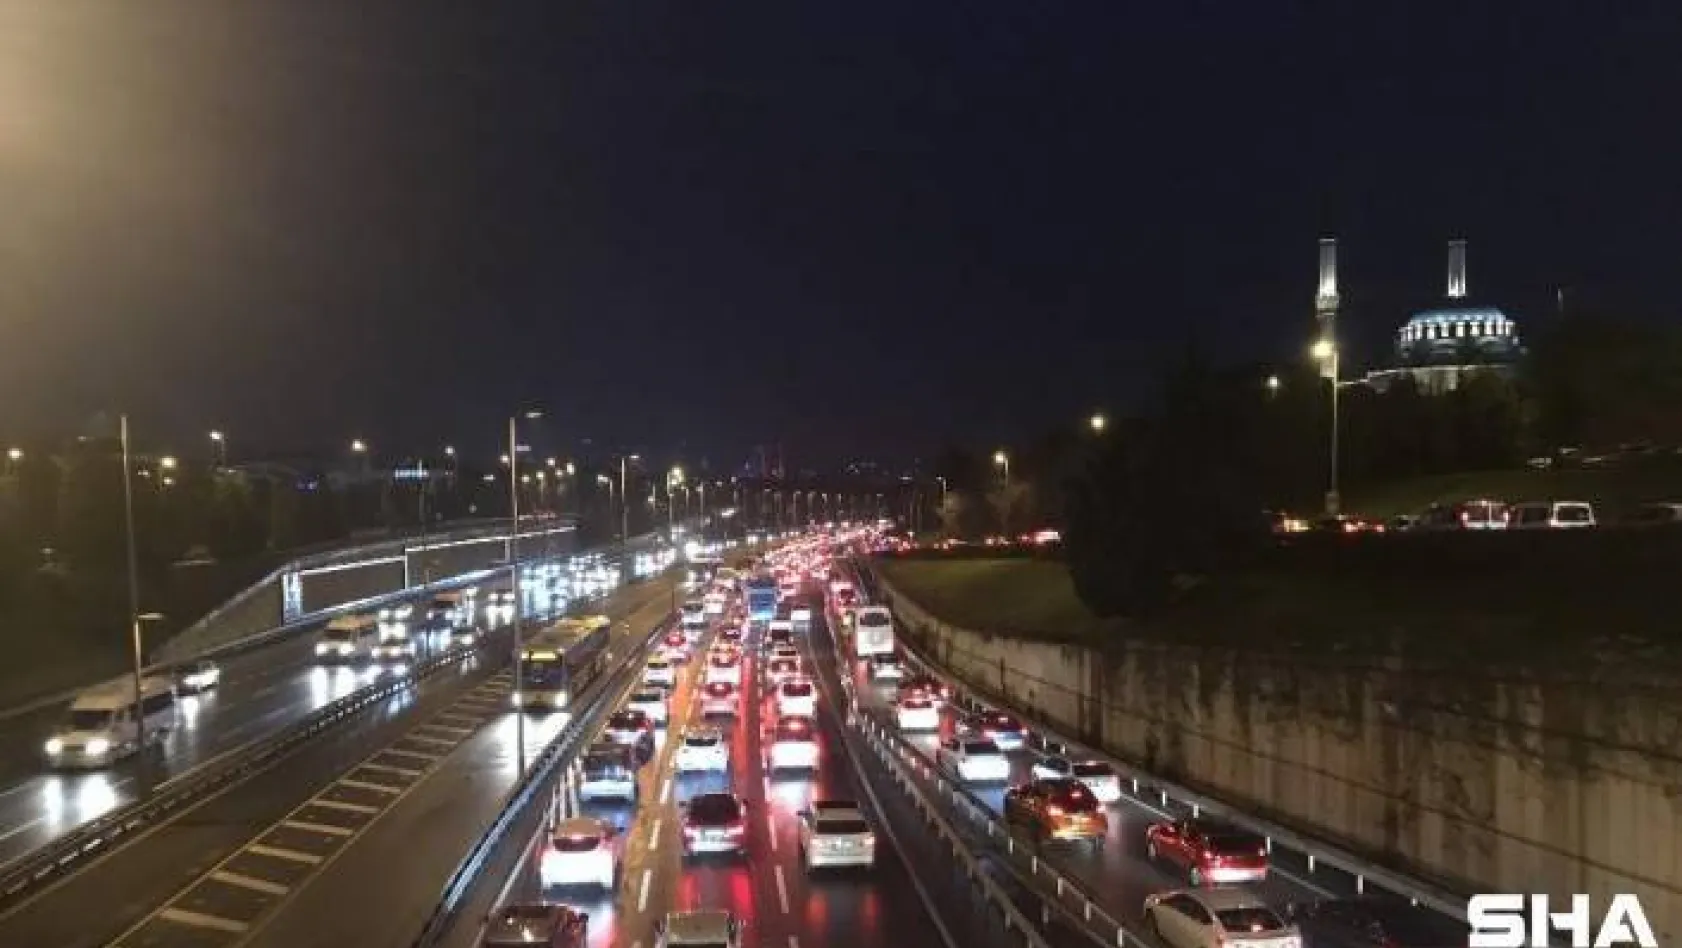 56 saatlik kısıtlama sonrası 15 Temmuz Şehitler Köprüsü'nde trafik yoğunluğu